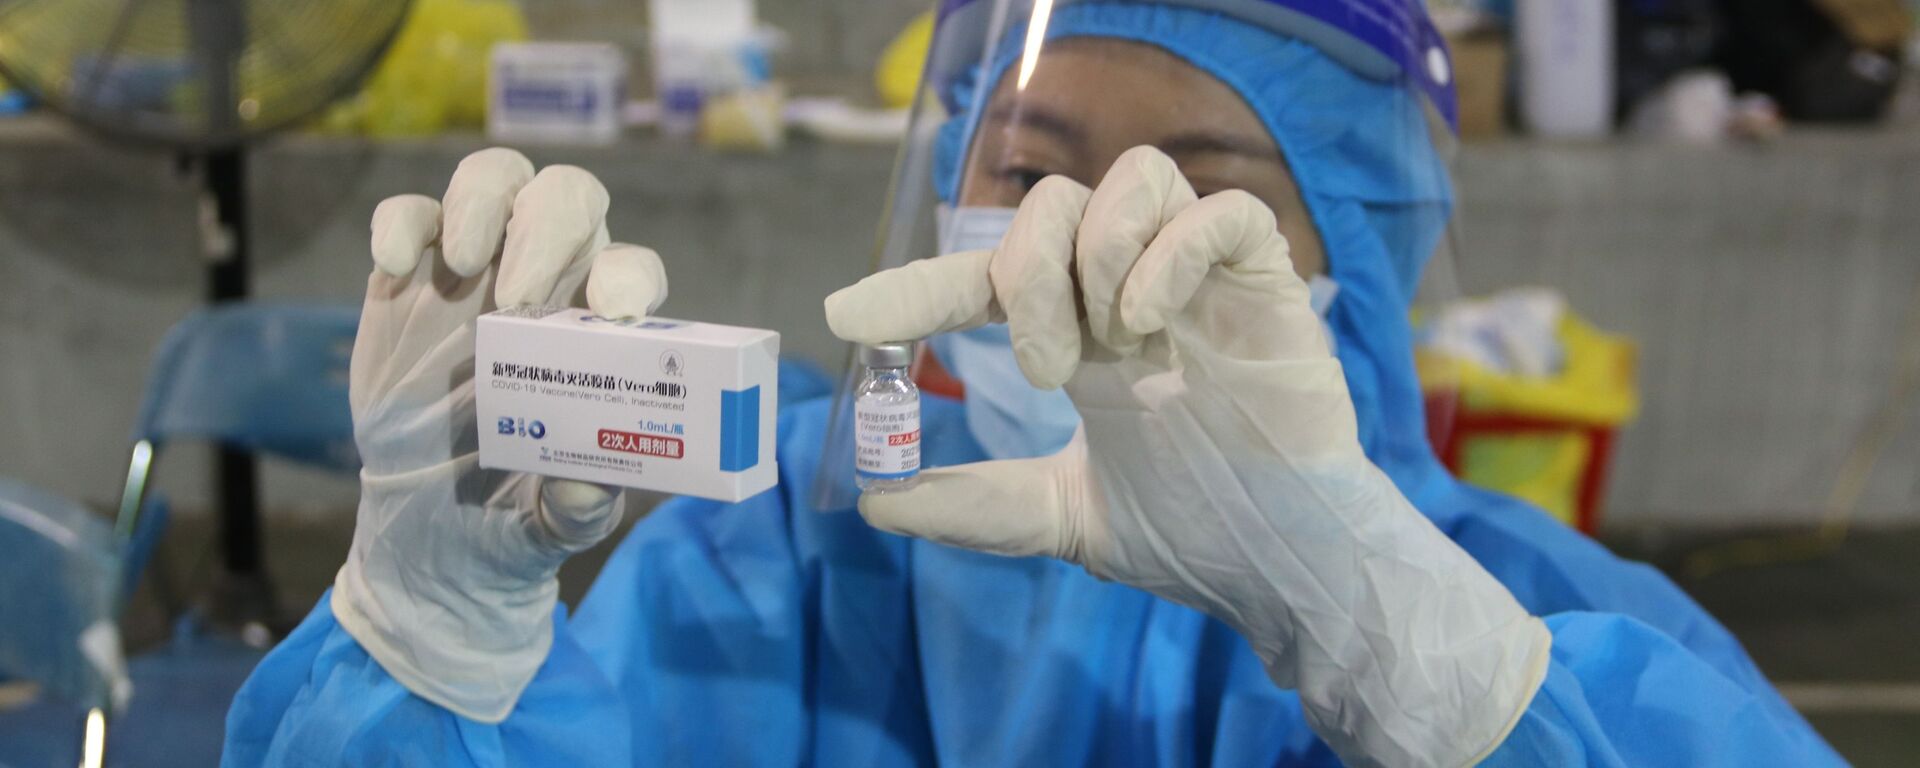 Vaccine Vero Cell của Sinopharm được sử dụng tiêm chủng tại điểm tiêm số 1 Huyền Trần Công Chúa (Quận 1). - Sputnik Việt Nam, 1920, 07.09.2021